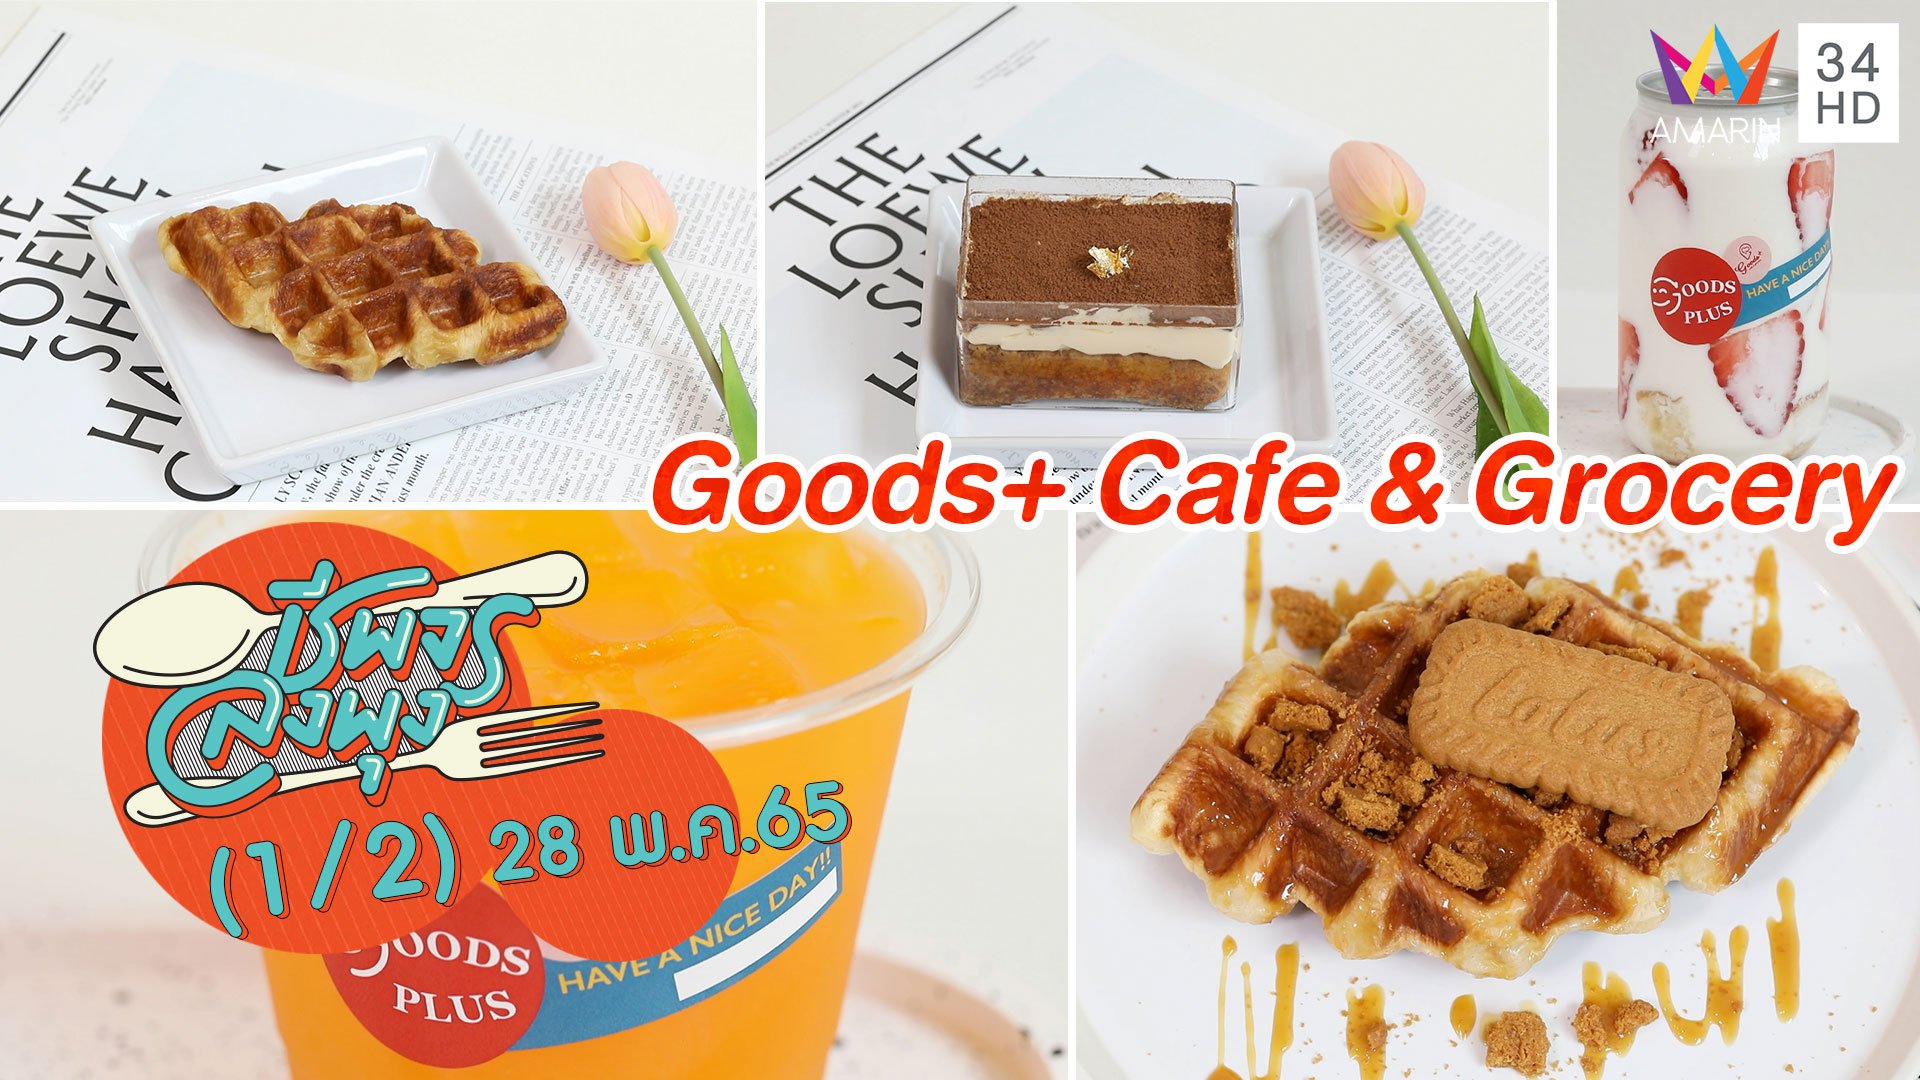 คาเฟ่สุดชิค @ ร้าน Goods+ Cafe & Grocery | ชีพจรลงพุง | 28 พ.ค. 65 (1/2) | AMARIN TVHD34